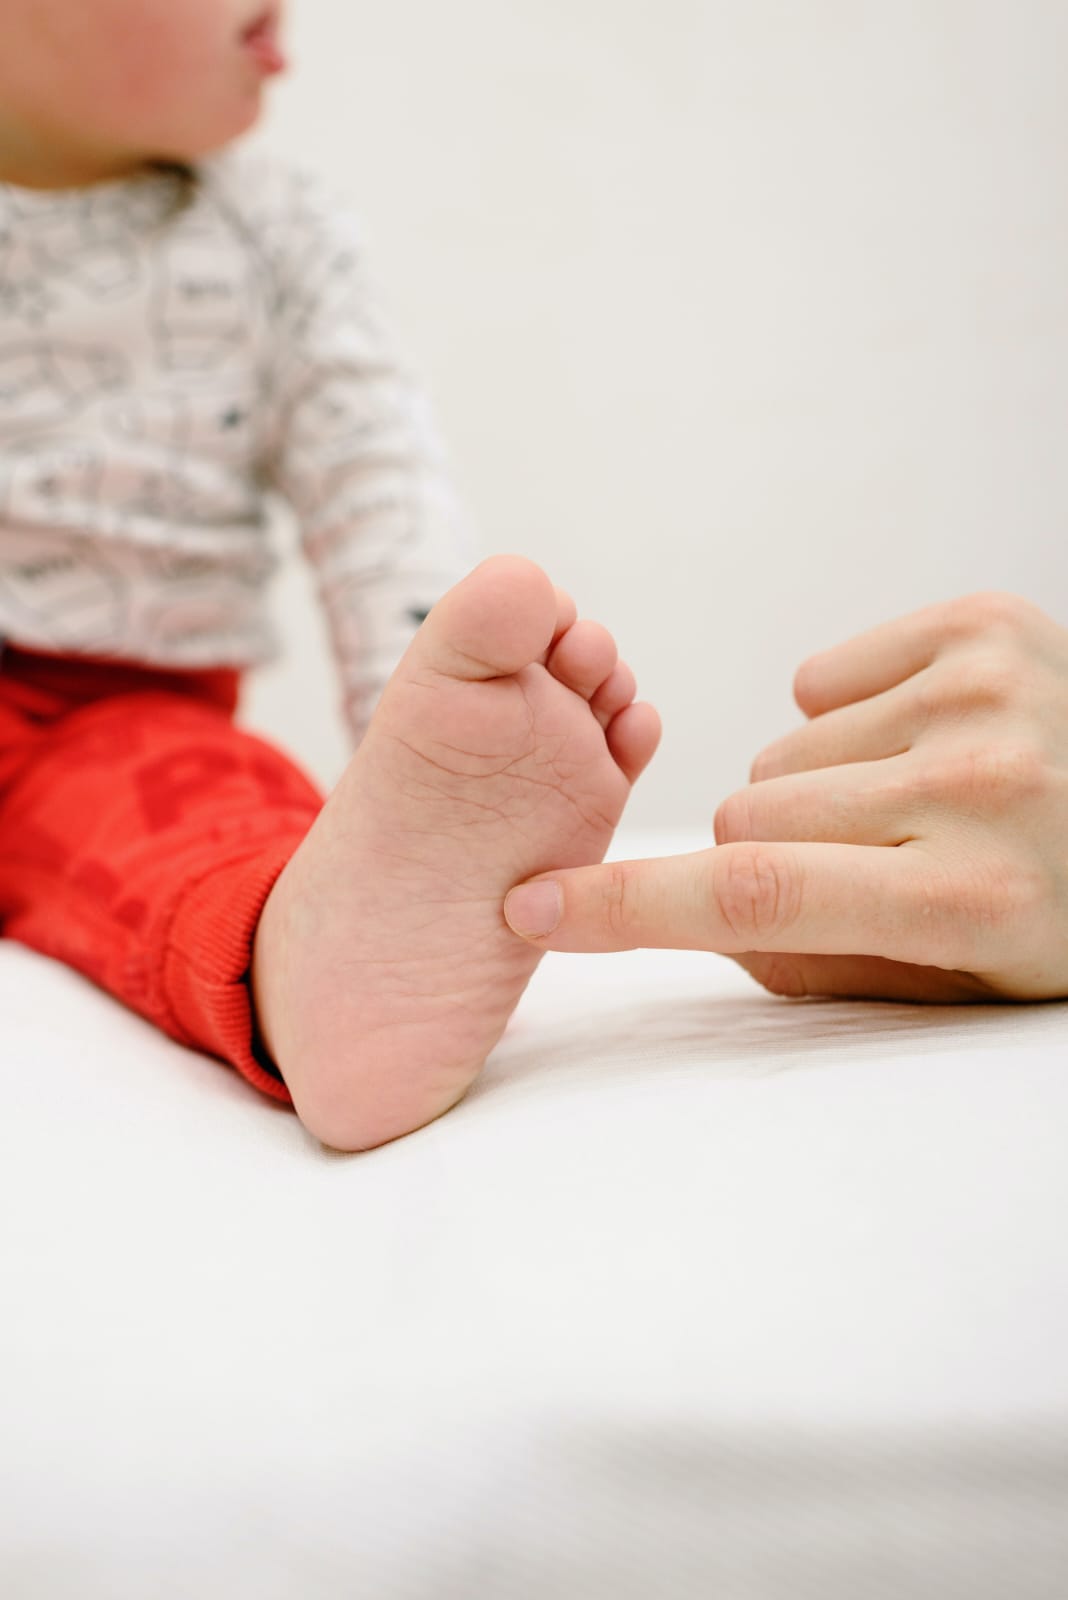 Comment vérifier si bébé a des pieds normaux, larges ou fins ...